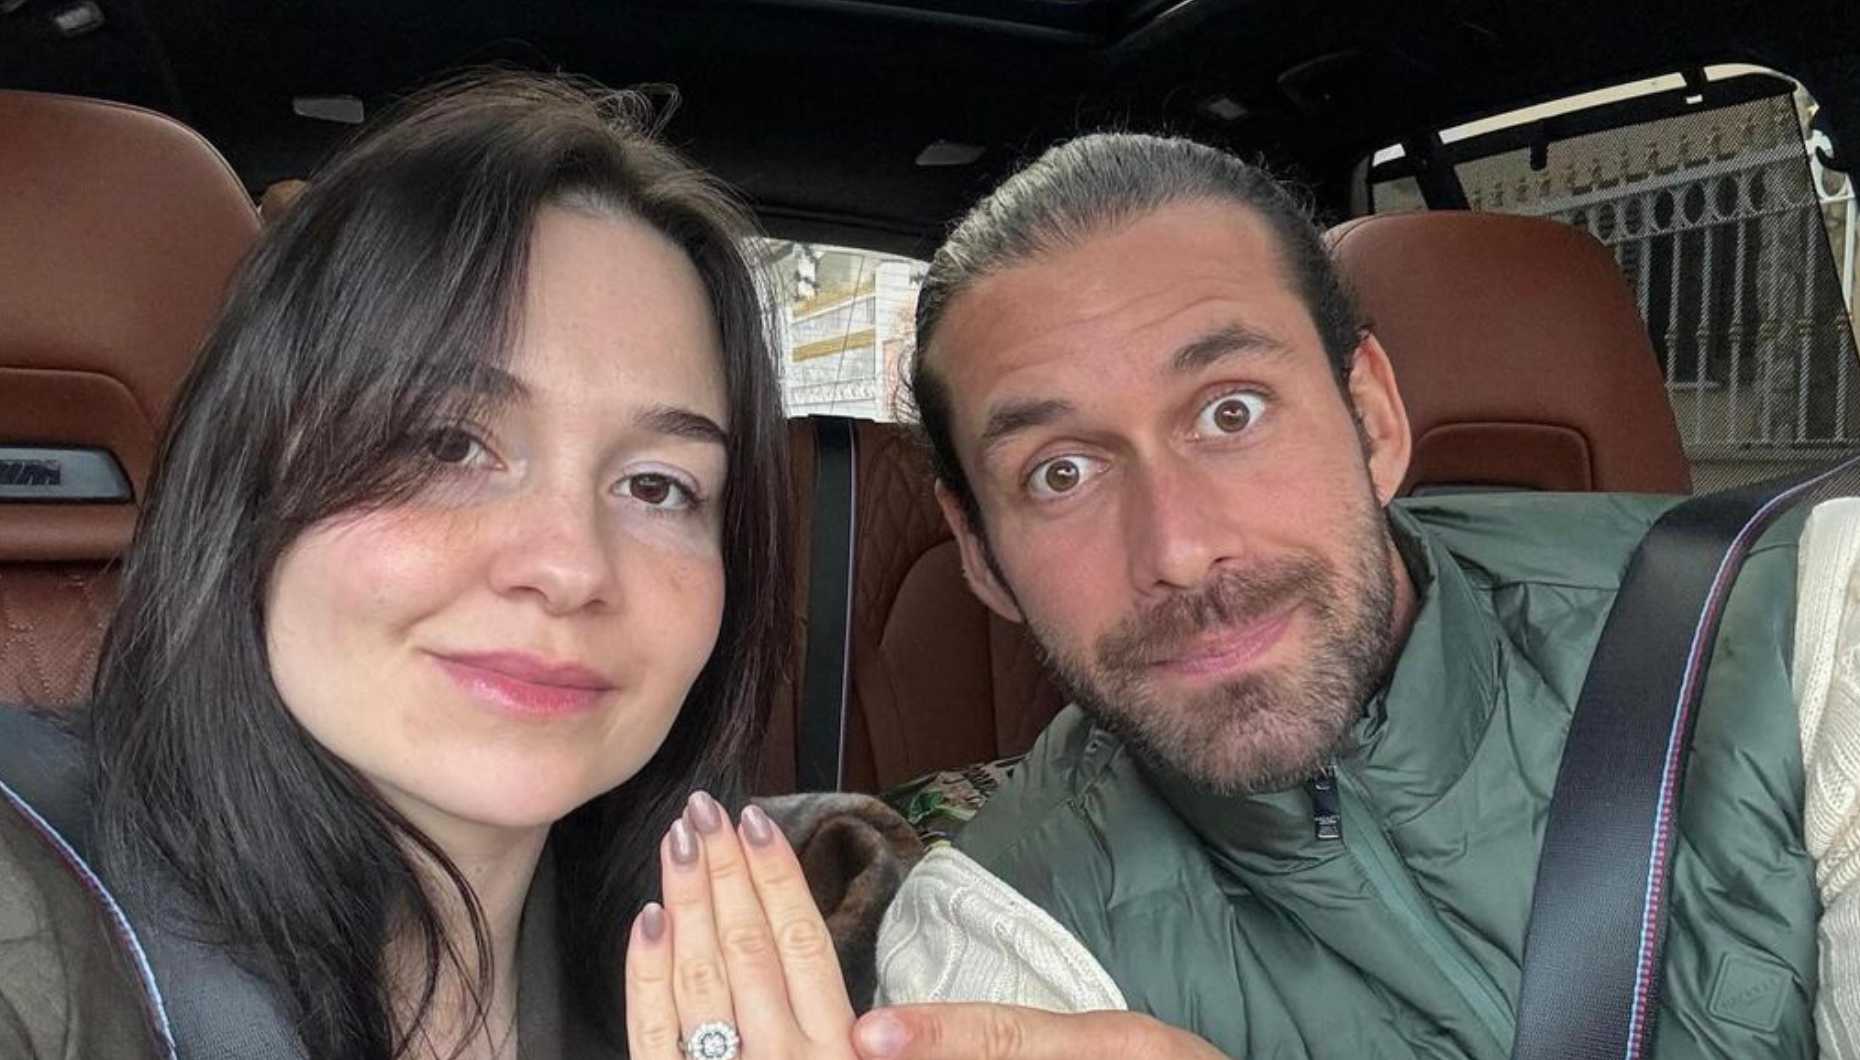 Francisco Macau - anel noivado - Mais um pedido de casamento! Francisco Macau e Sara Calado estão noivos: vê o anel de noivado